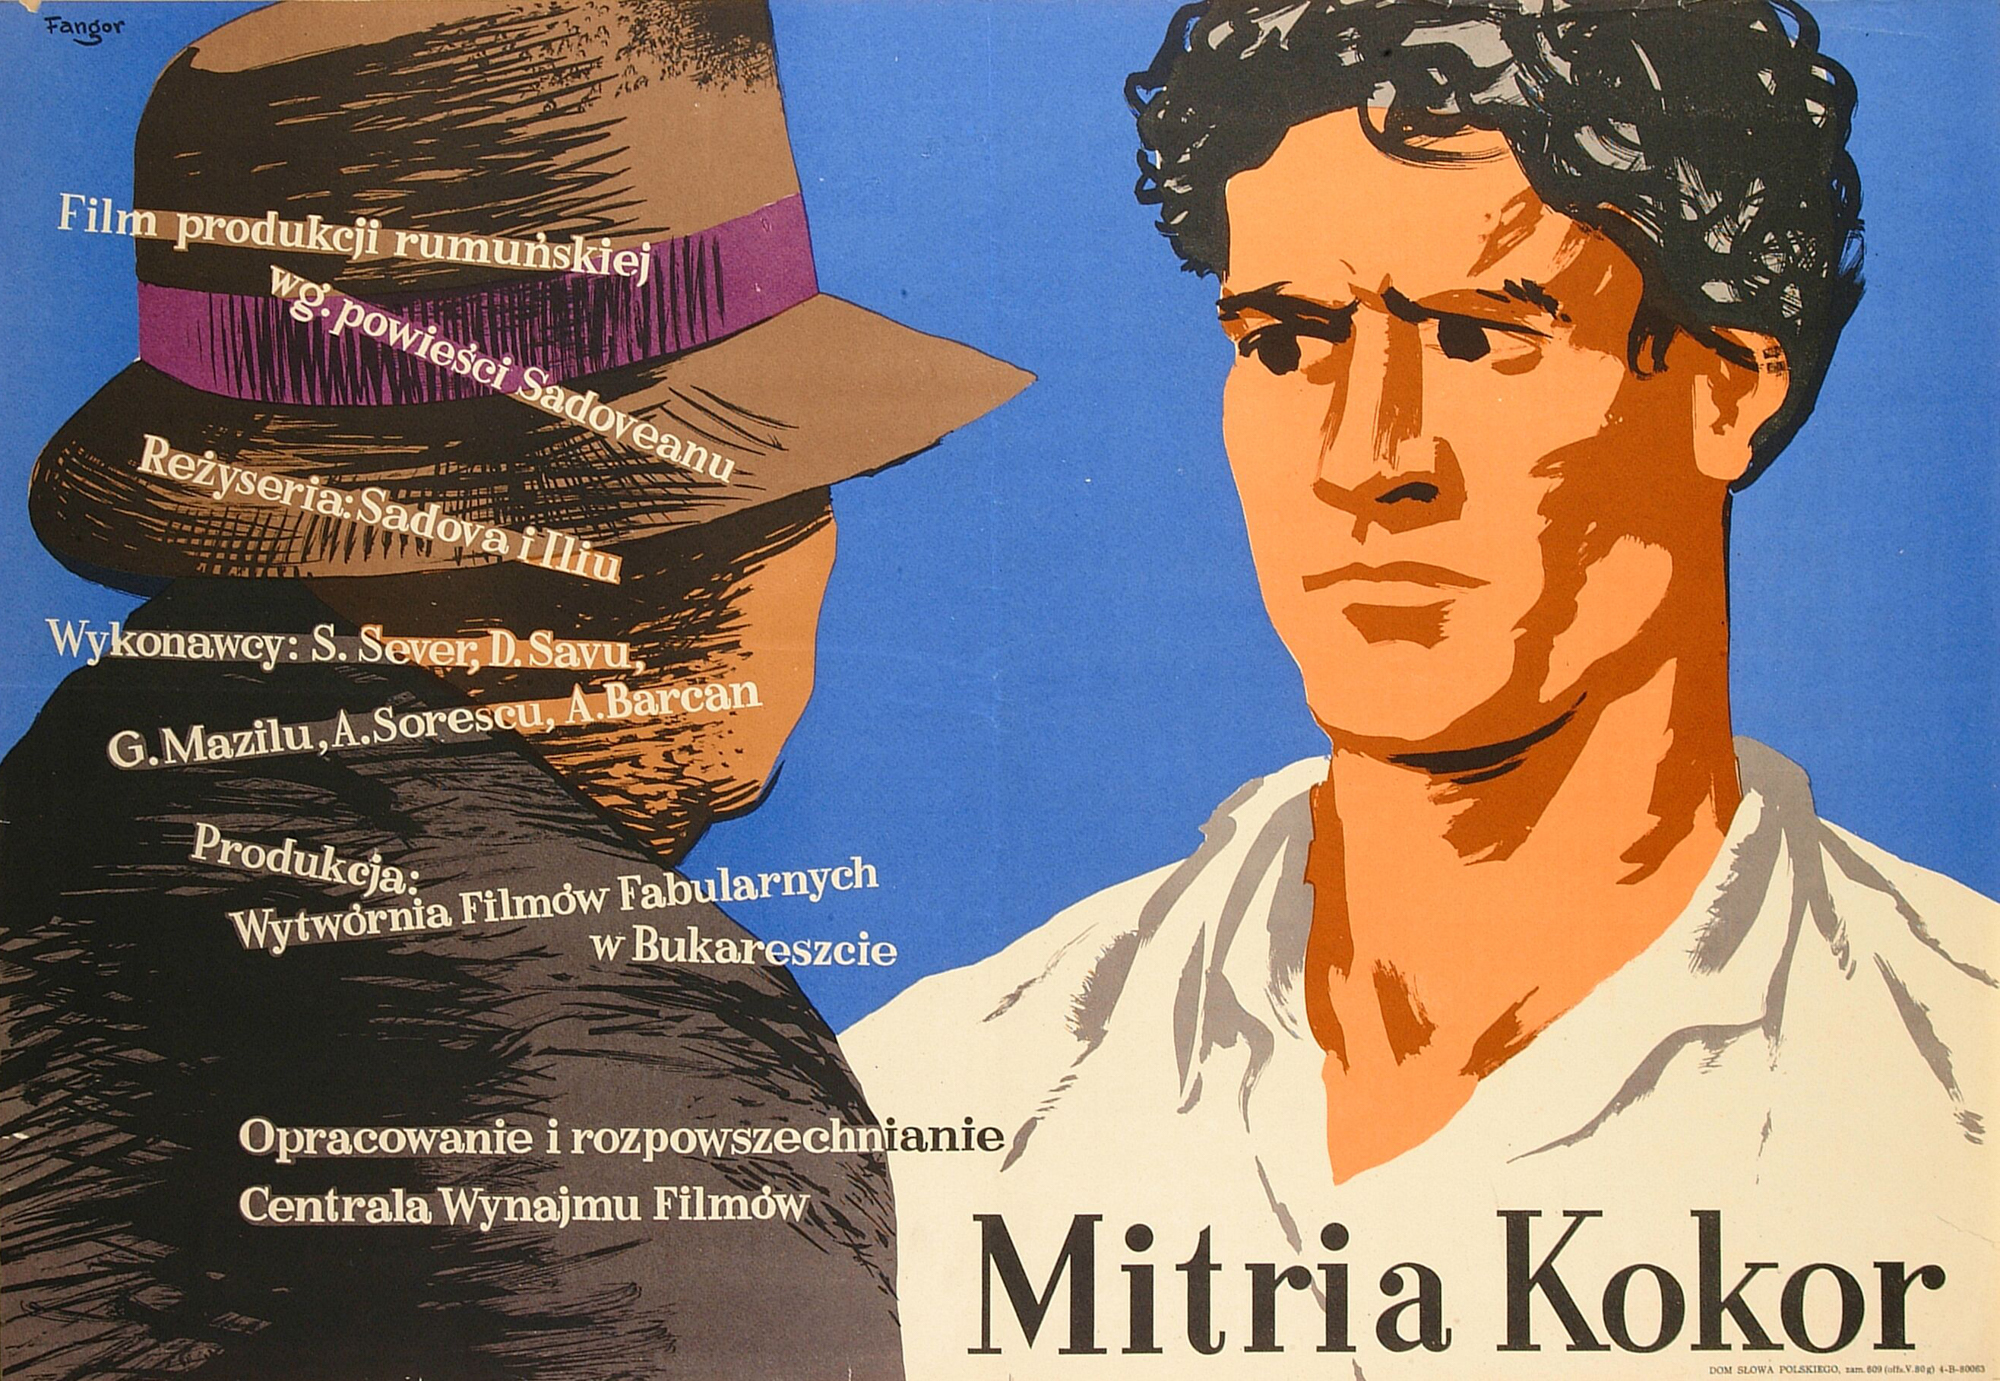 Wojciech Fangor: Mitria Kokor, 1953